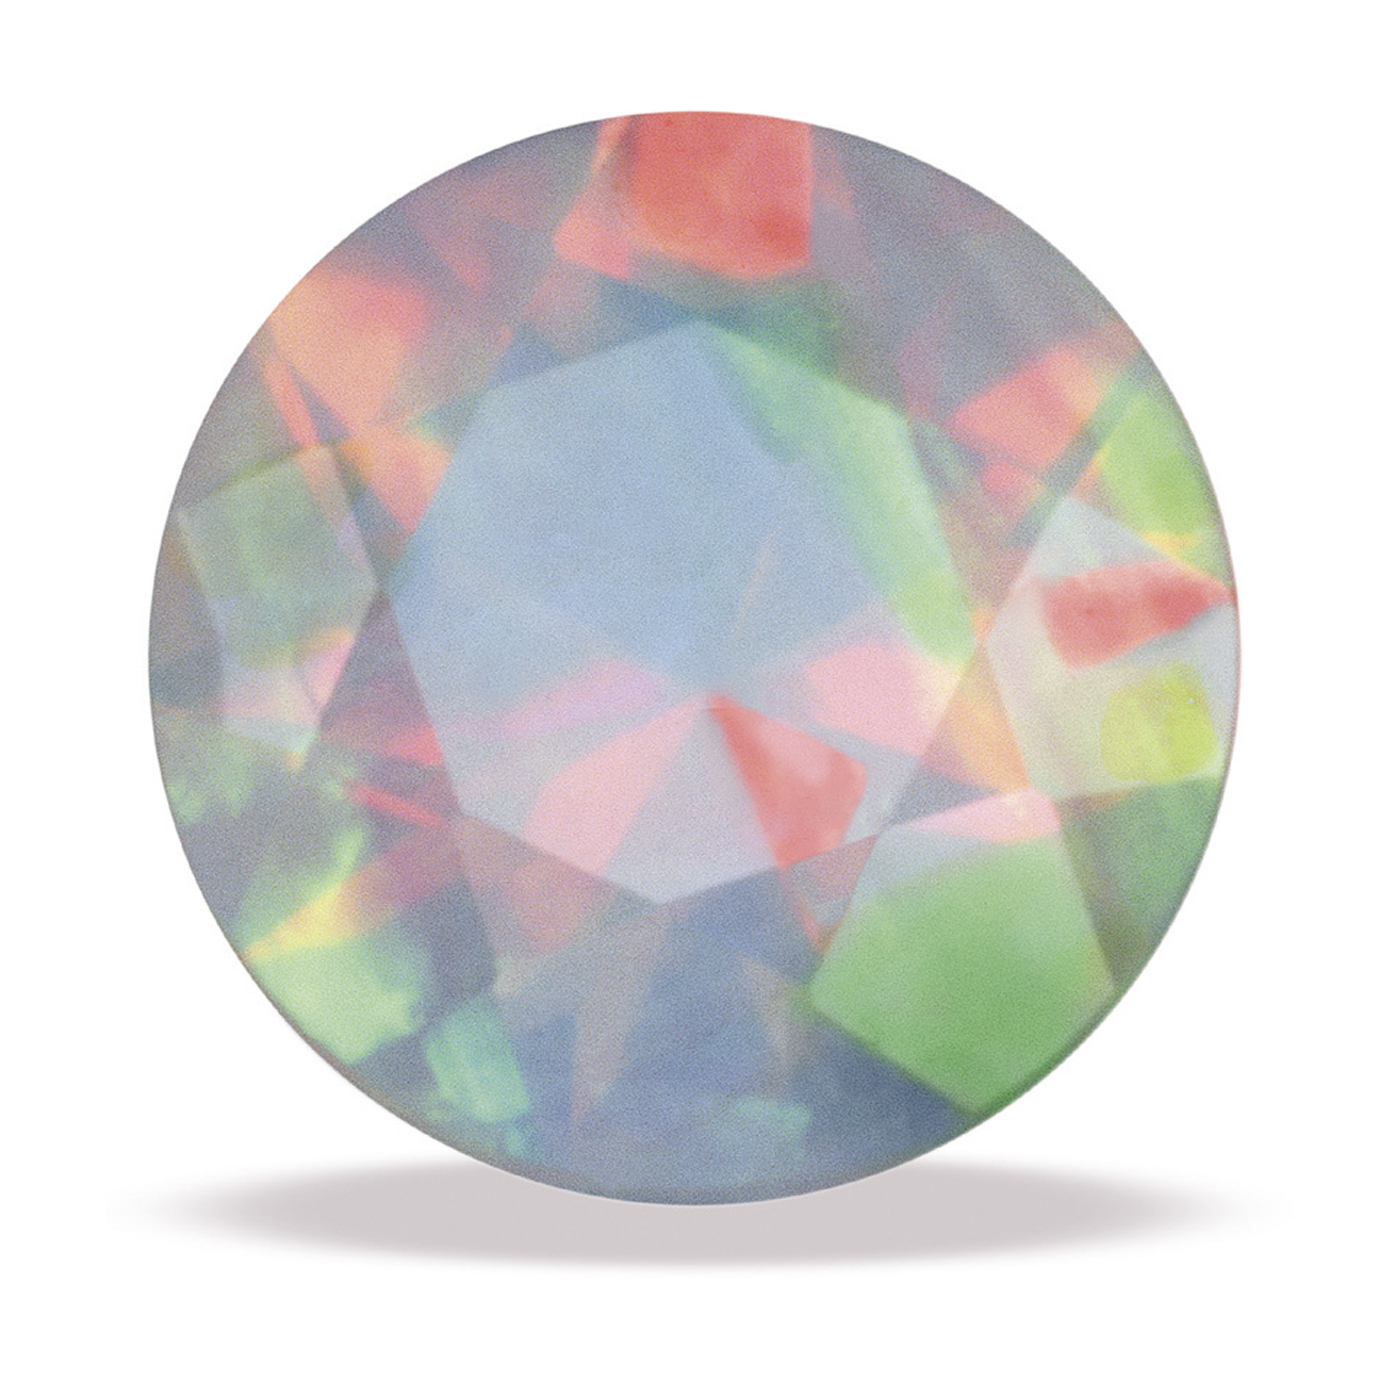 Swarovski Opal, synth., rund, facettiert, weiß, ø 3 mm - 1 Stück